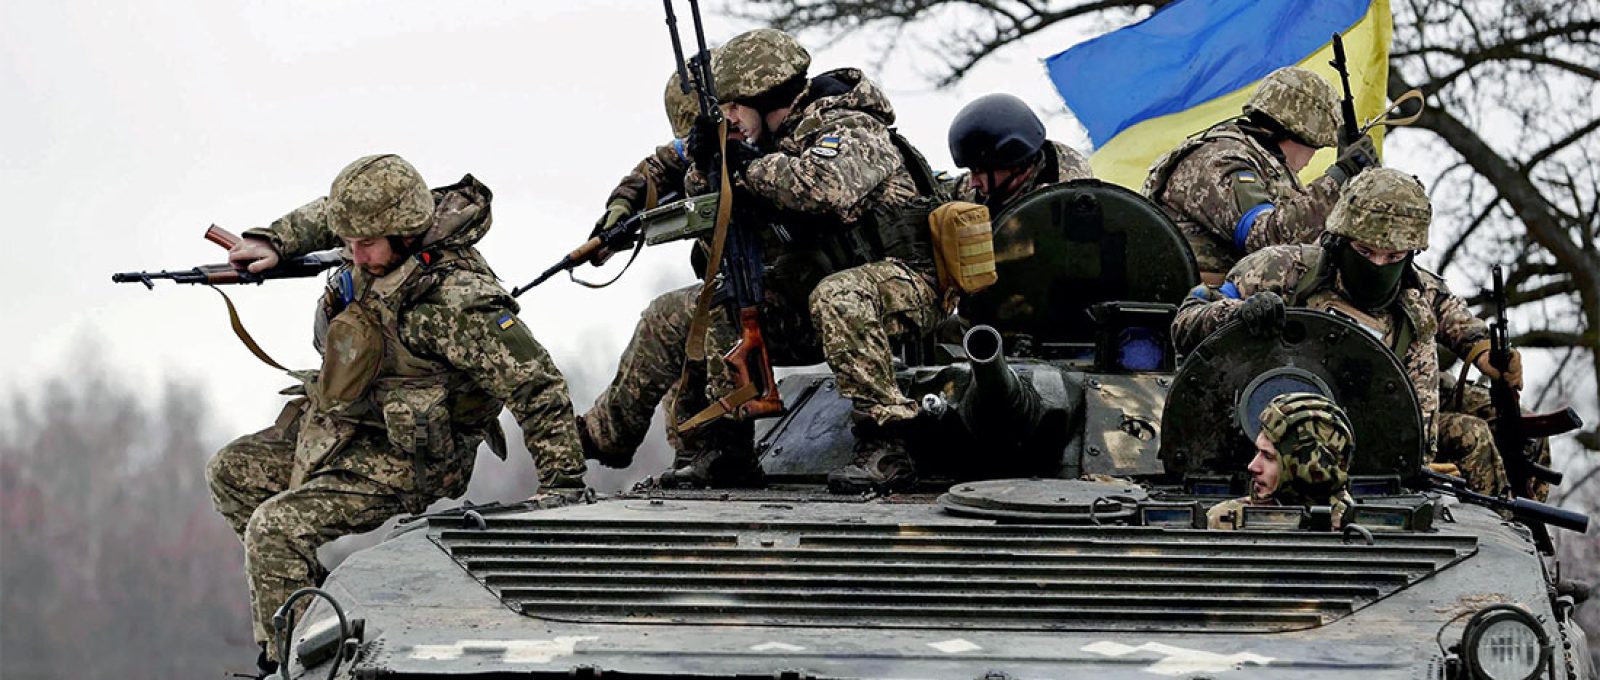 Soldados ucranianos participam de treinamento a cerca de 10 km da fronteira com a Rússia e a Bielorrússia, em Chernihiv, norte da Ucrânia, em 2 de fevereiro de 2023 (Kyodo News via Getty Images).